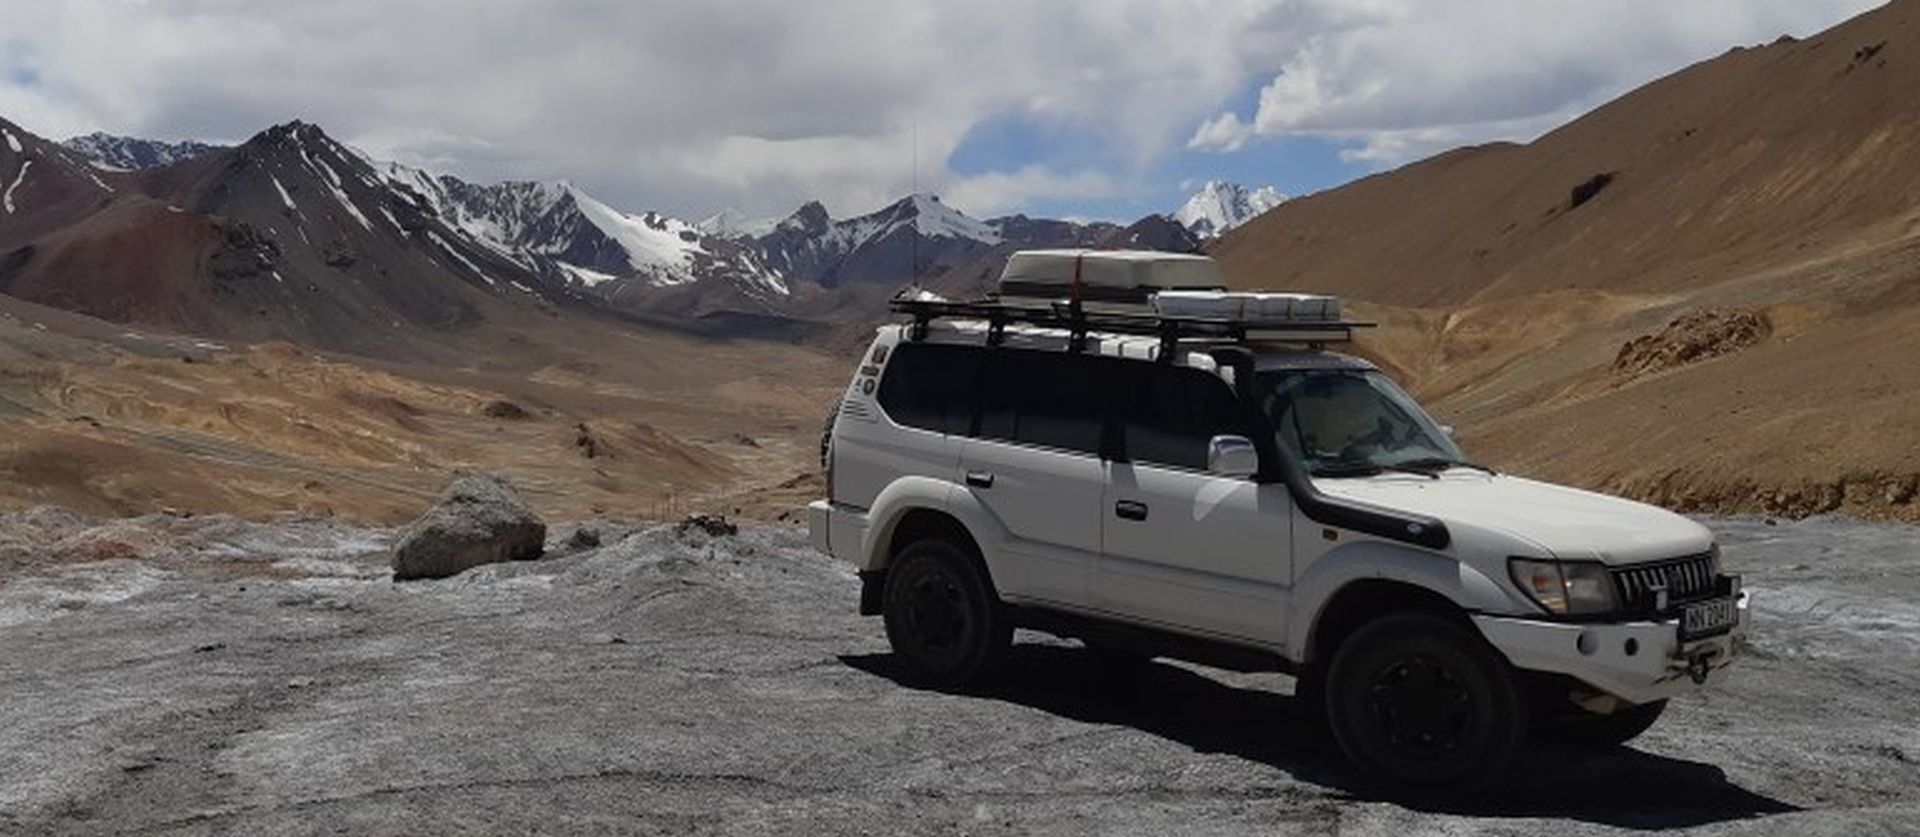 Pamir Highway - migawki z podróży Julki i Kuby do Tadżykistanu